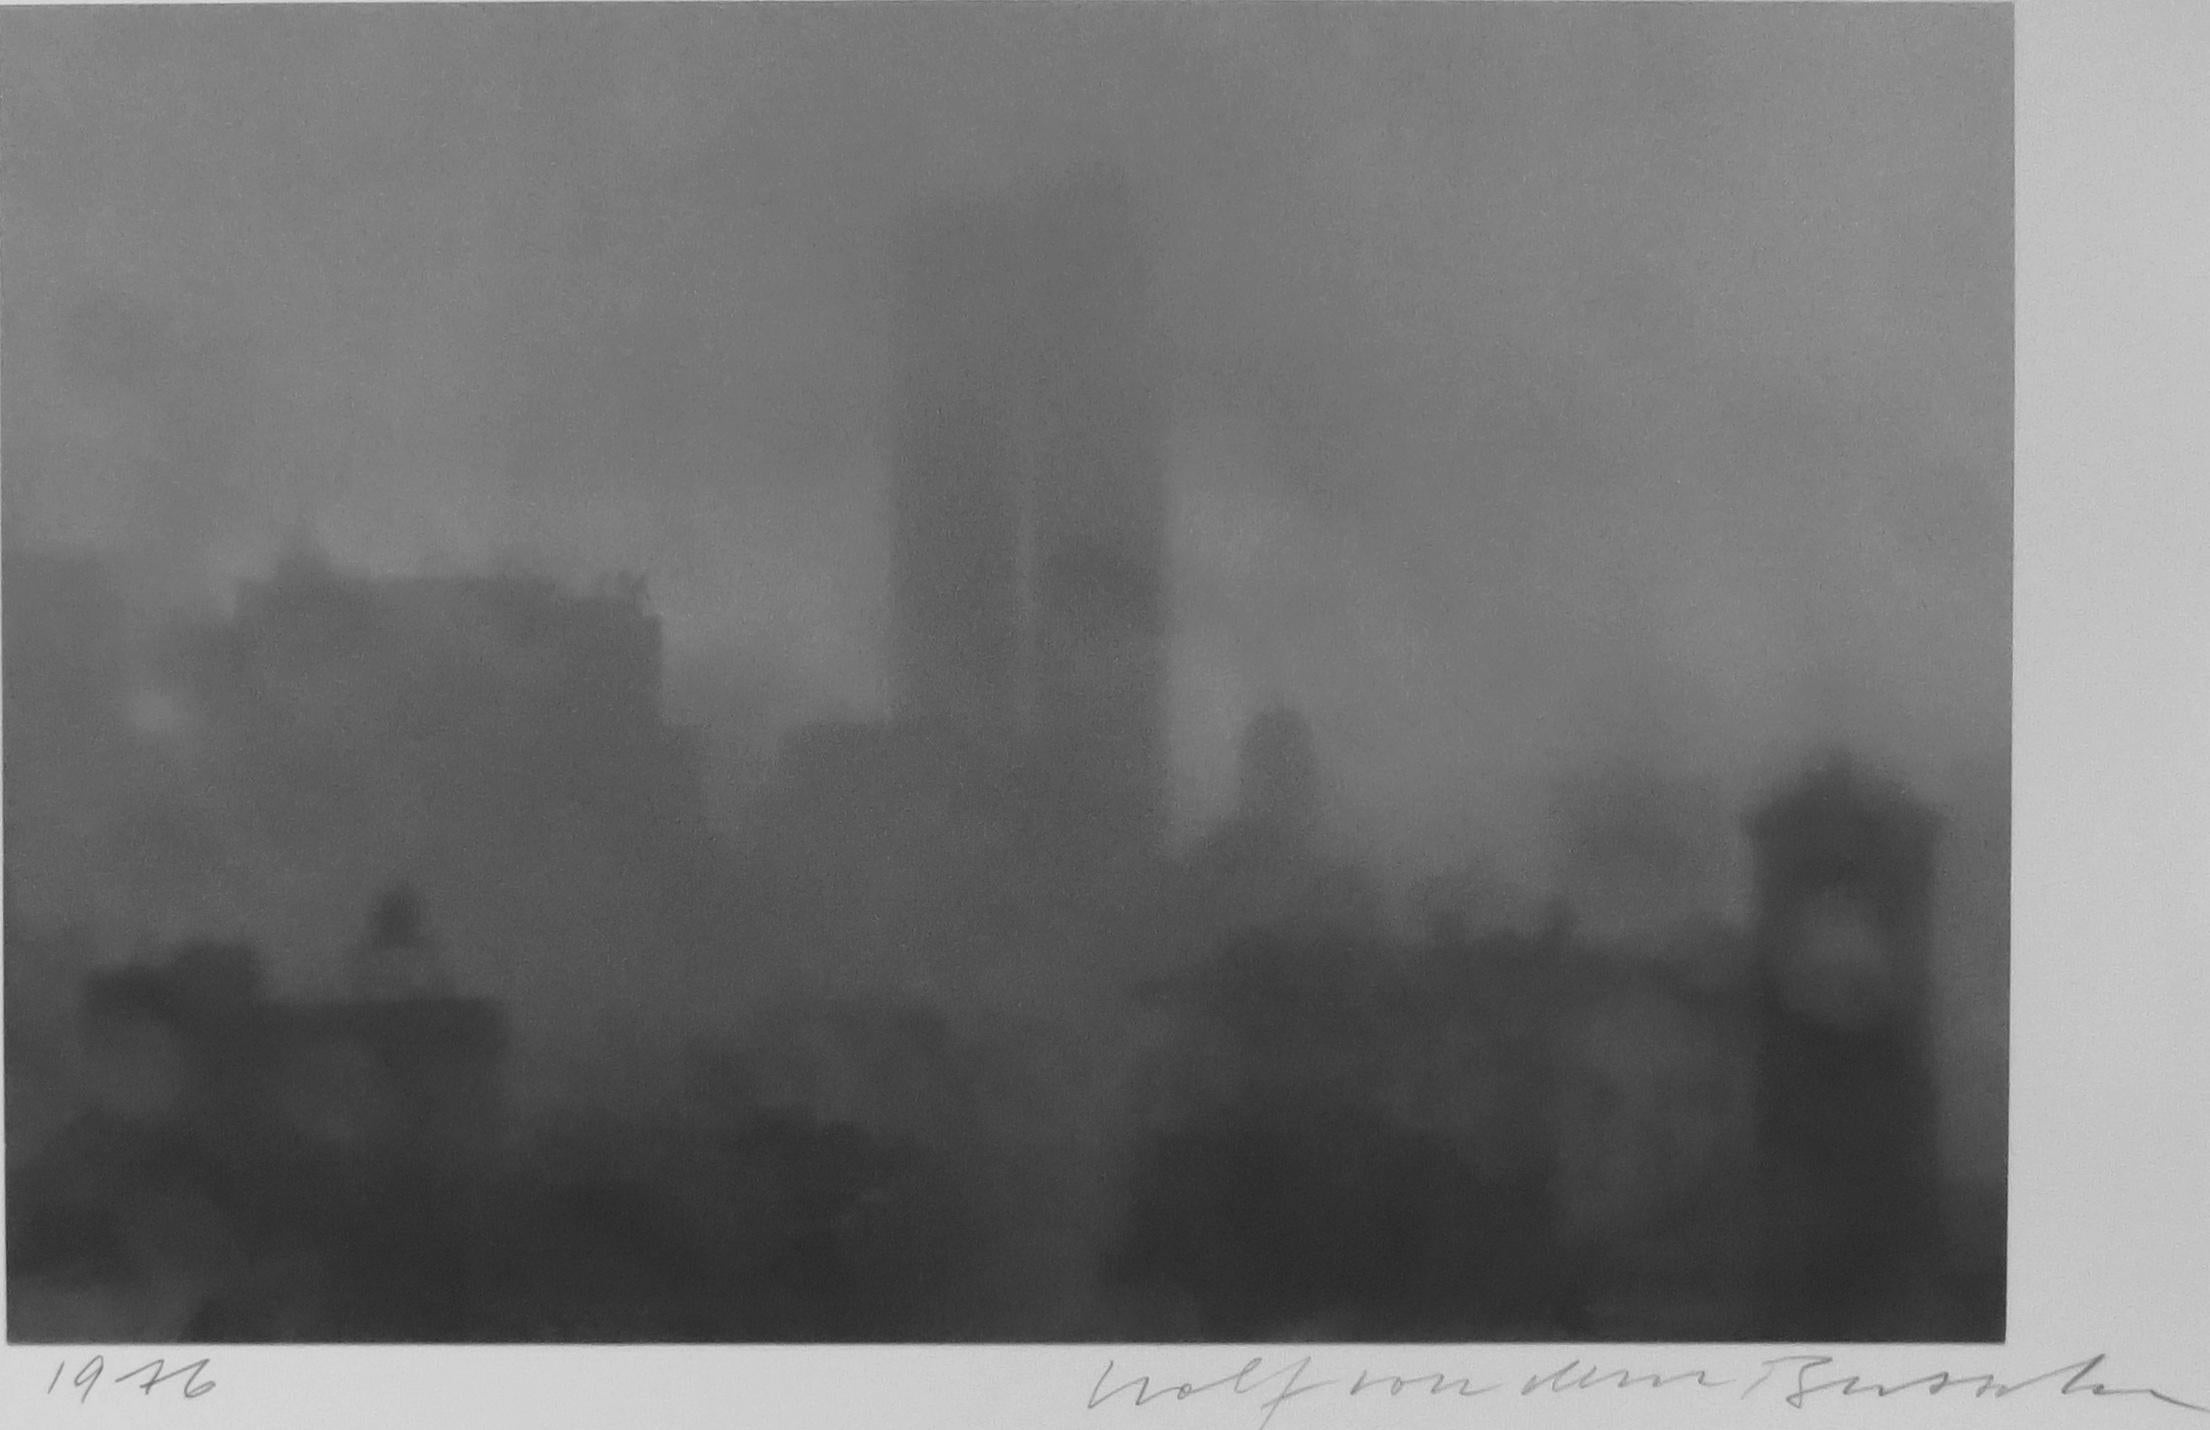 Washington Square mit Trade Center Towers II (Impressionismus), Photograph, von Wolf von dem Bussche